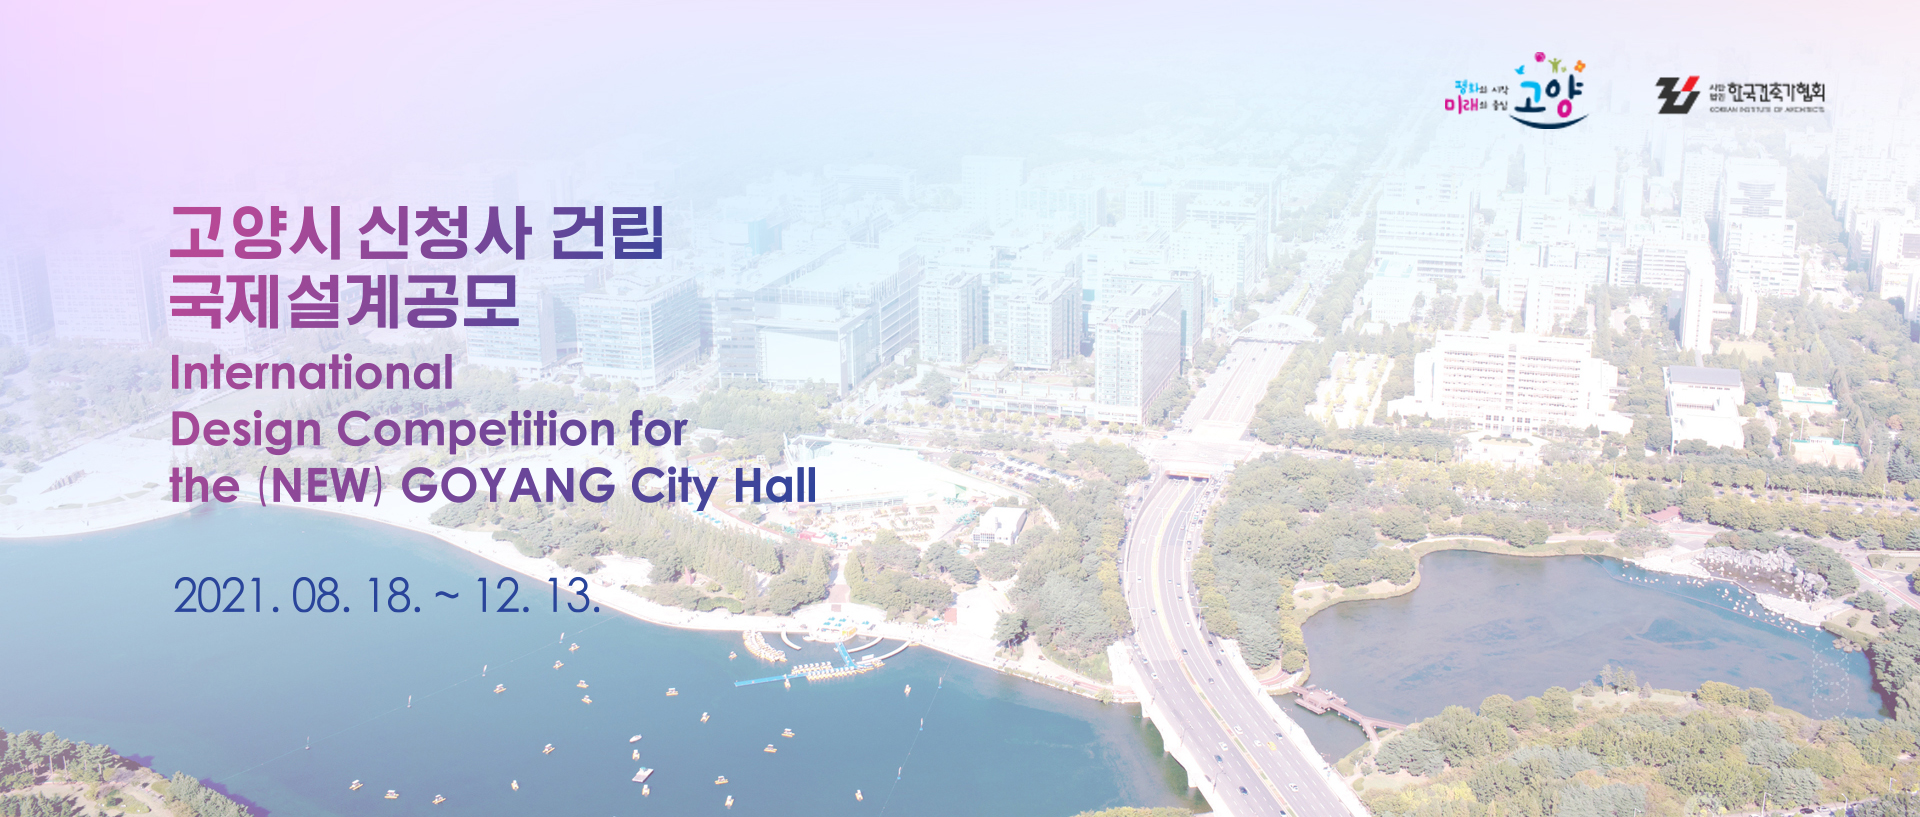 韩国高阳新市政厅国际设计竞赛